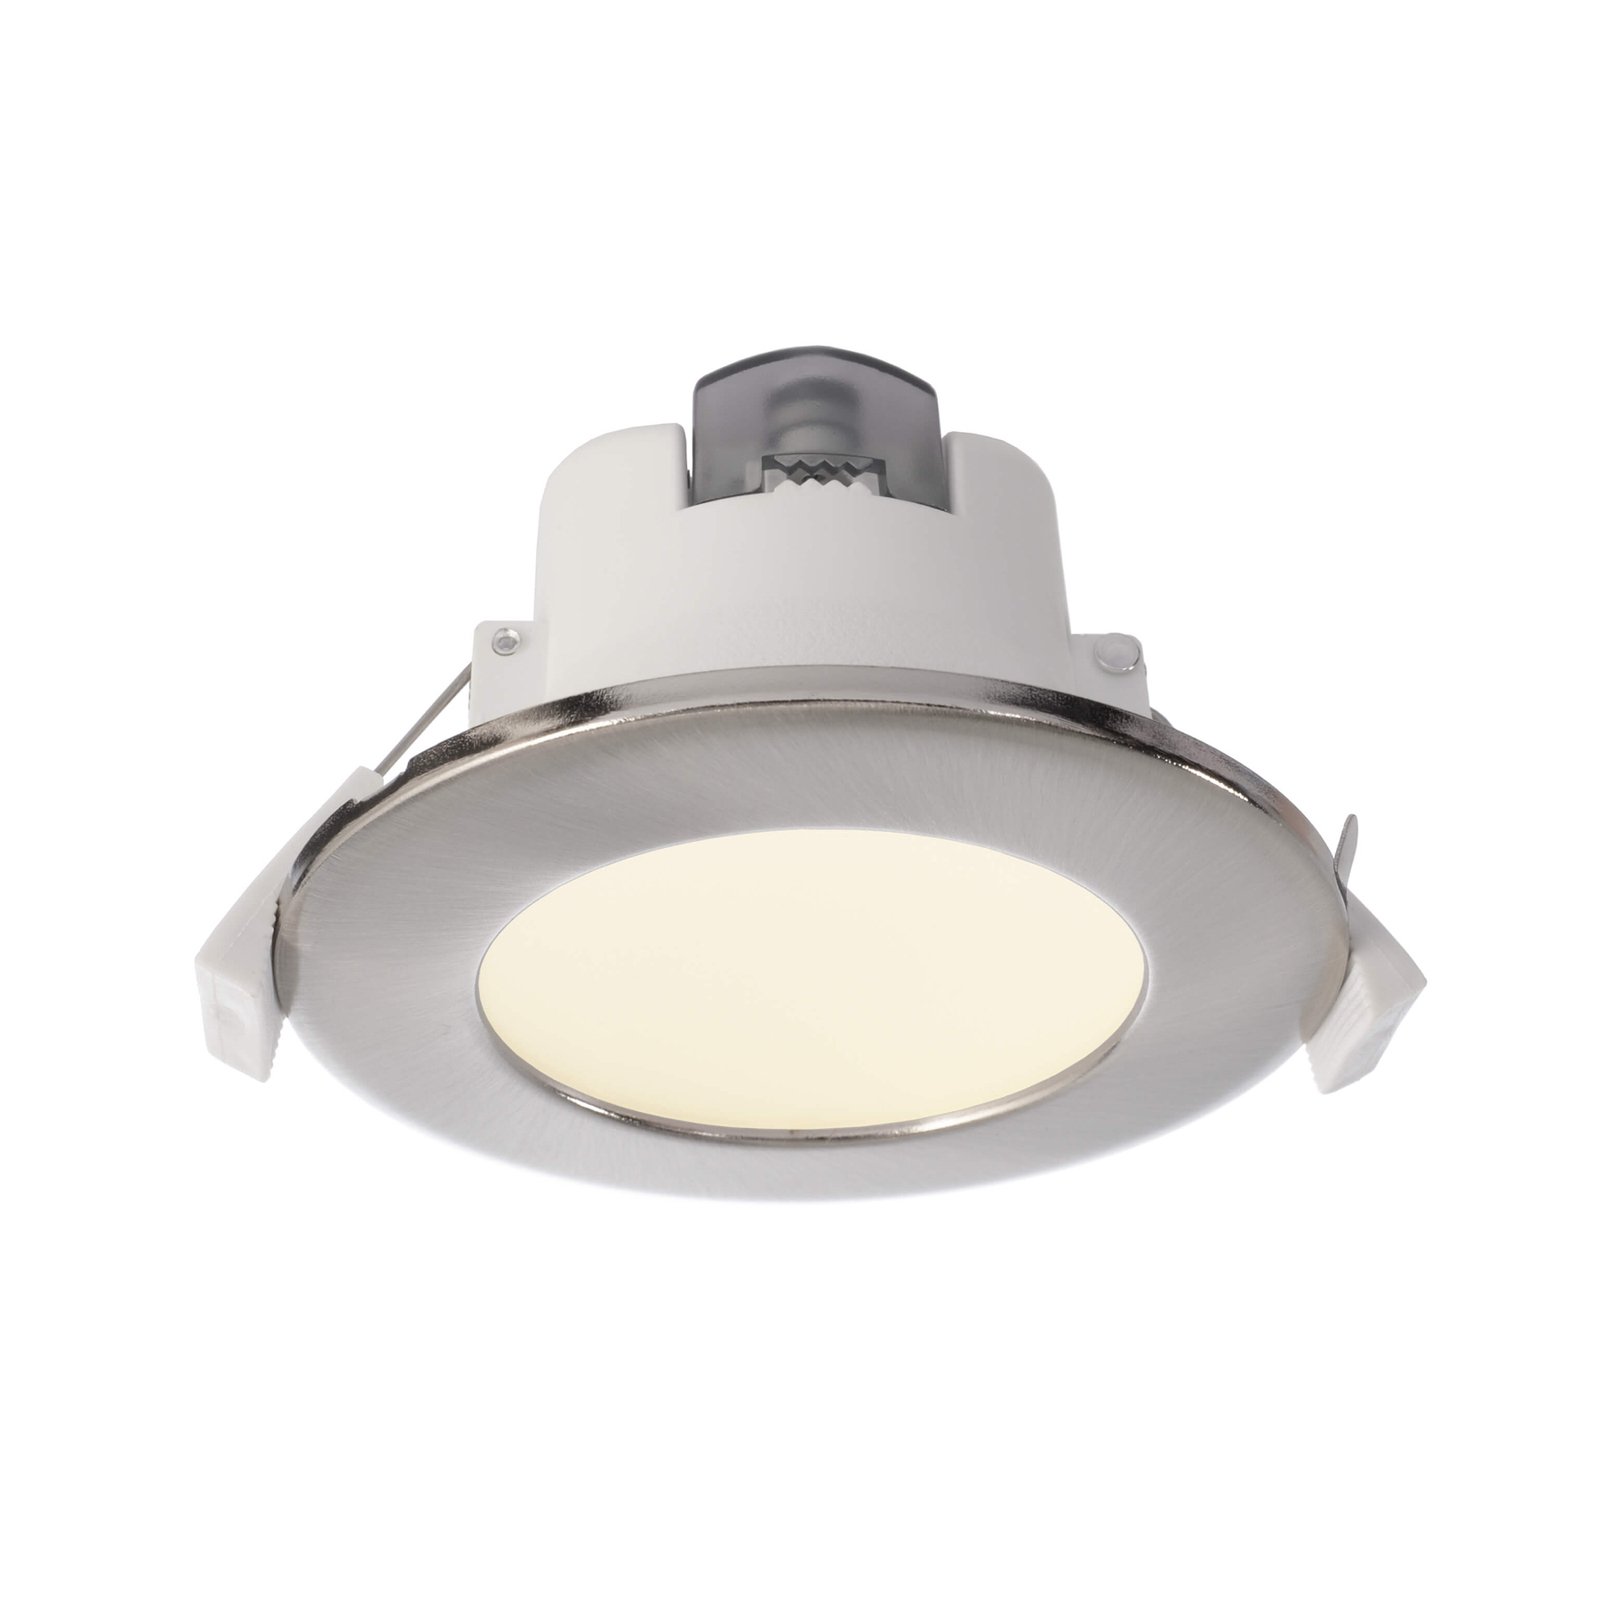 LED-inbyggnadslampa Acrux 68, vit, Ø 9,5 cm